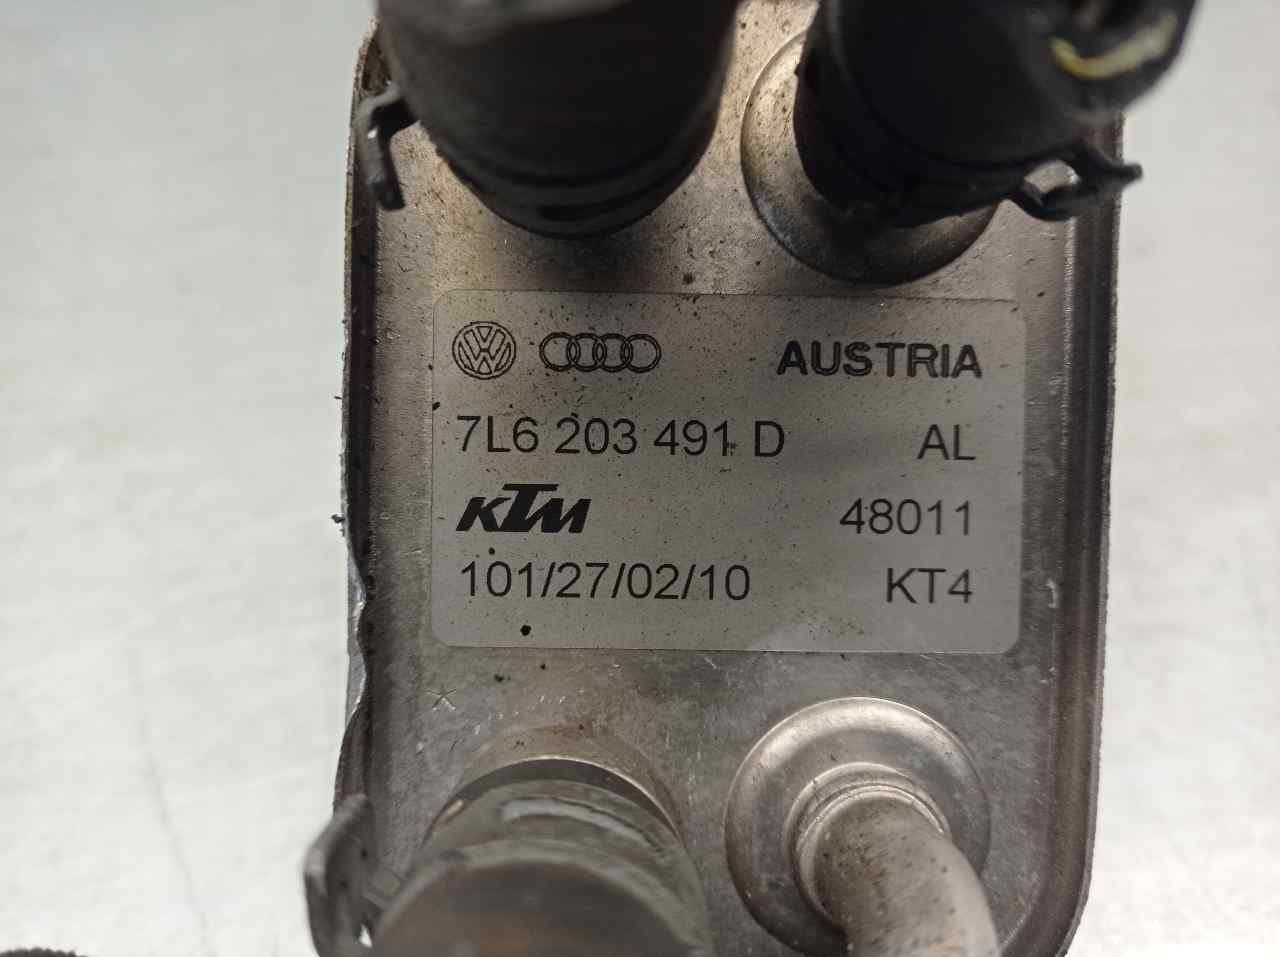 AUDI Q7 4L (2005-2015) Oil Cooler 7L6203491D, 101270210, KTM 19880814